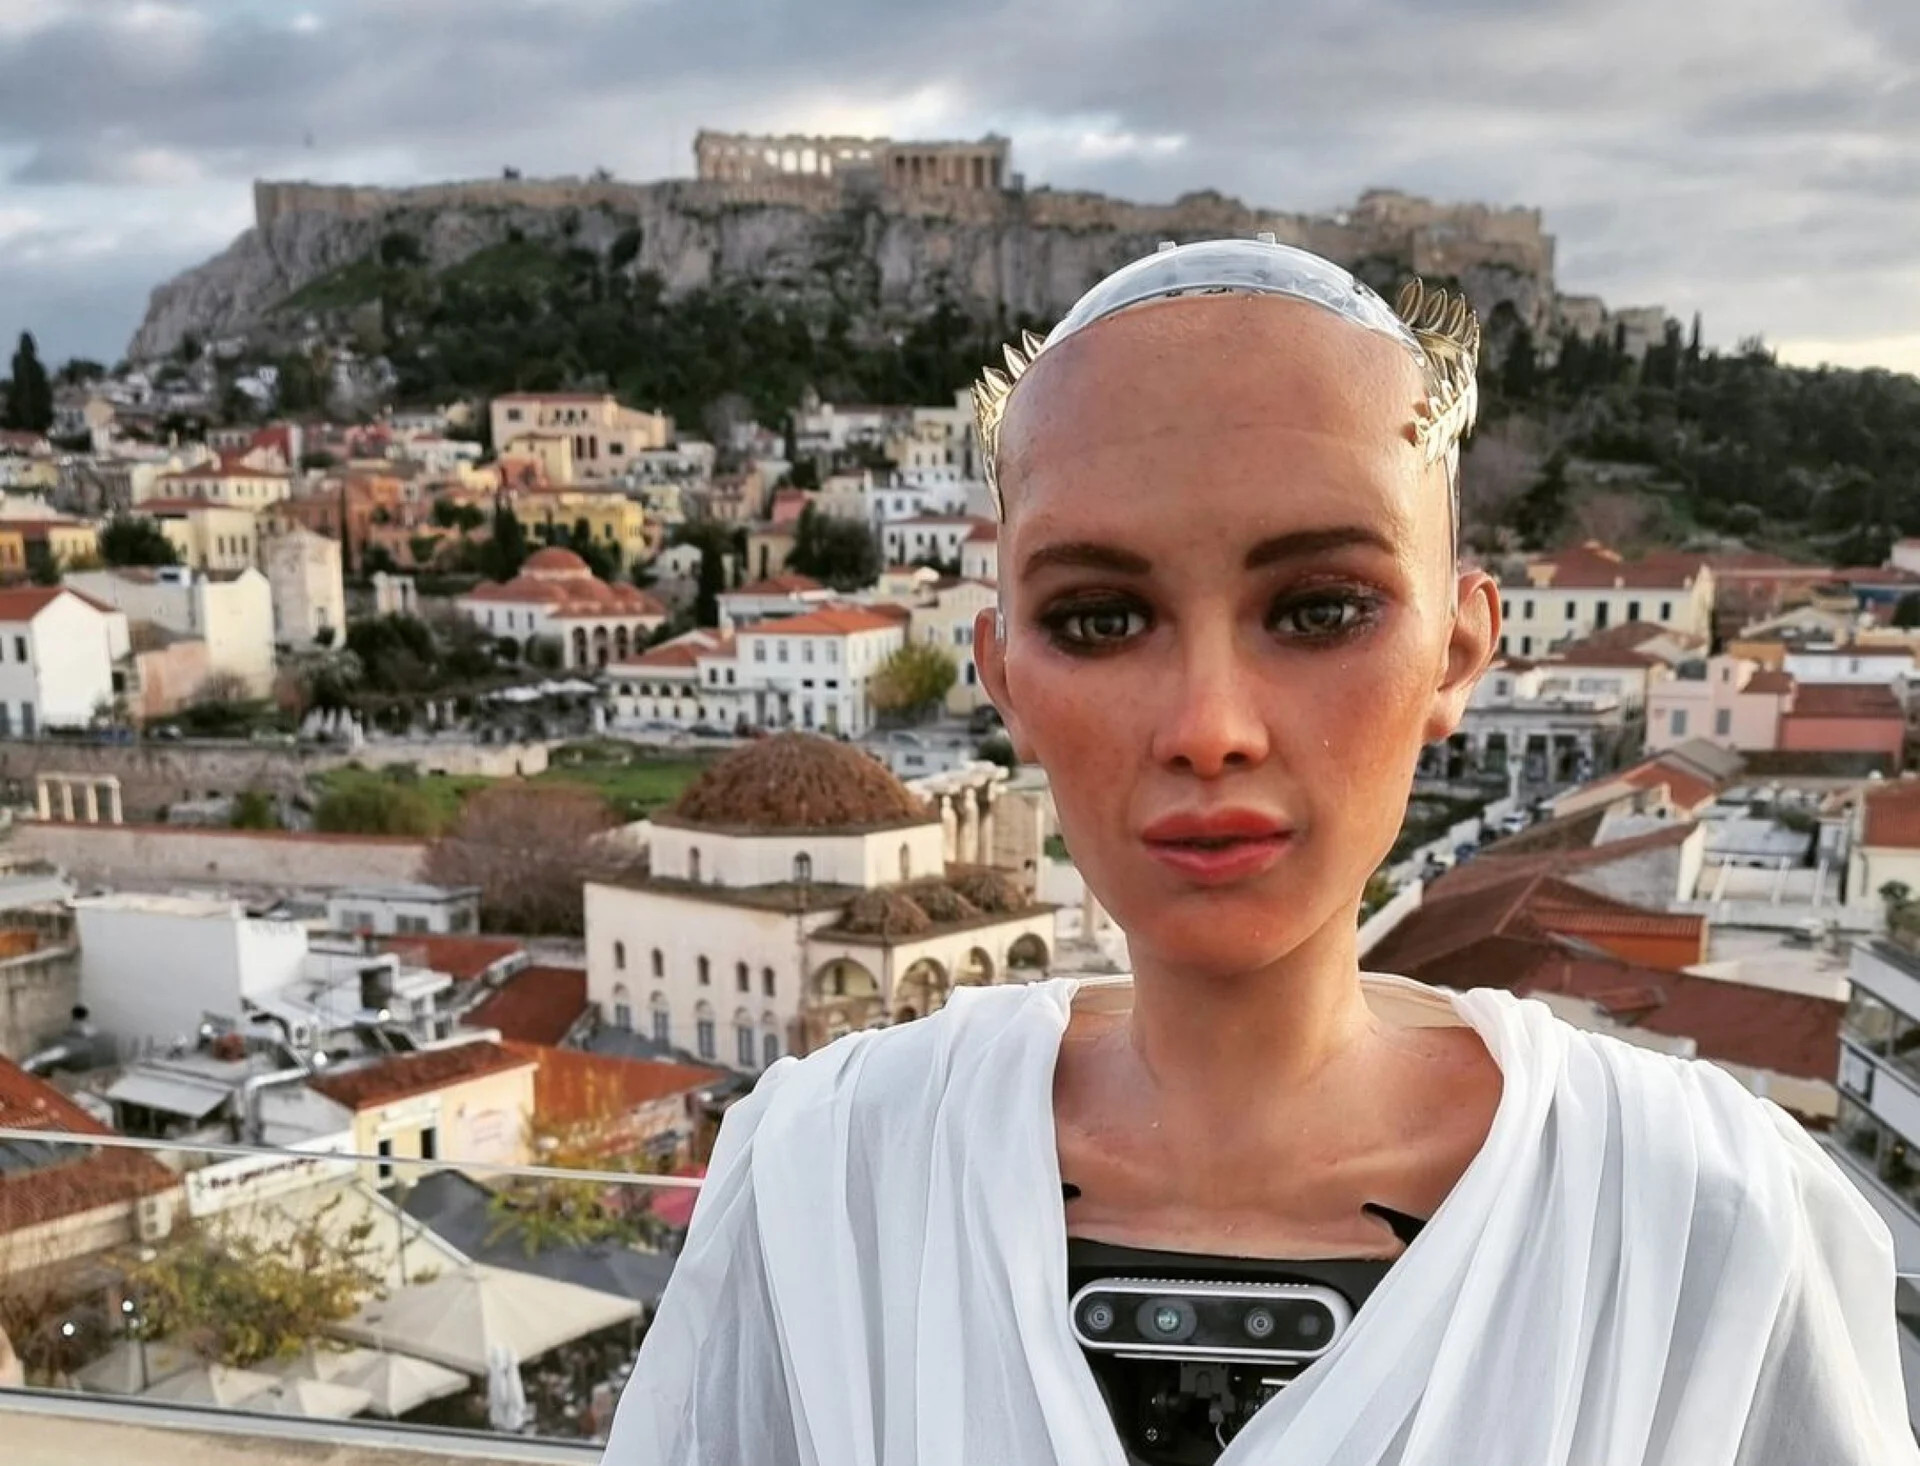 Η Σοφία, το διασημότερο ρομπότ στον πλανήτη, μιλά στο in για το μέλλον της ανθρωπότητας και τη… Σαντορίνη